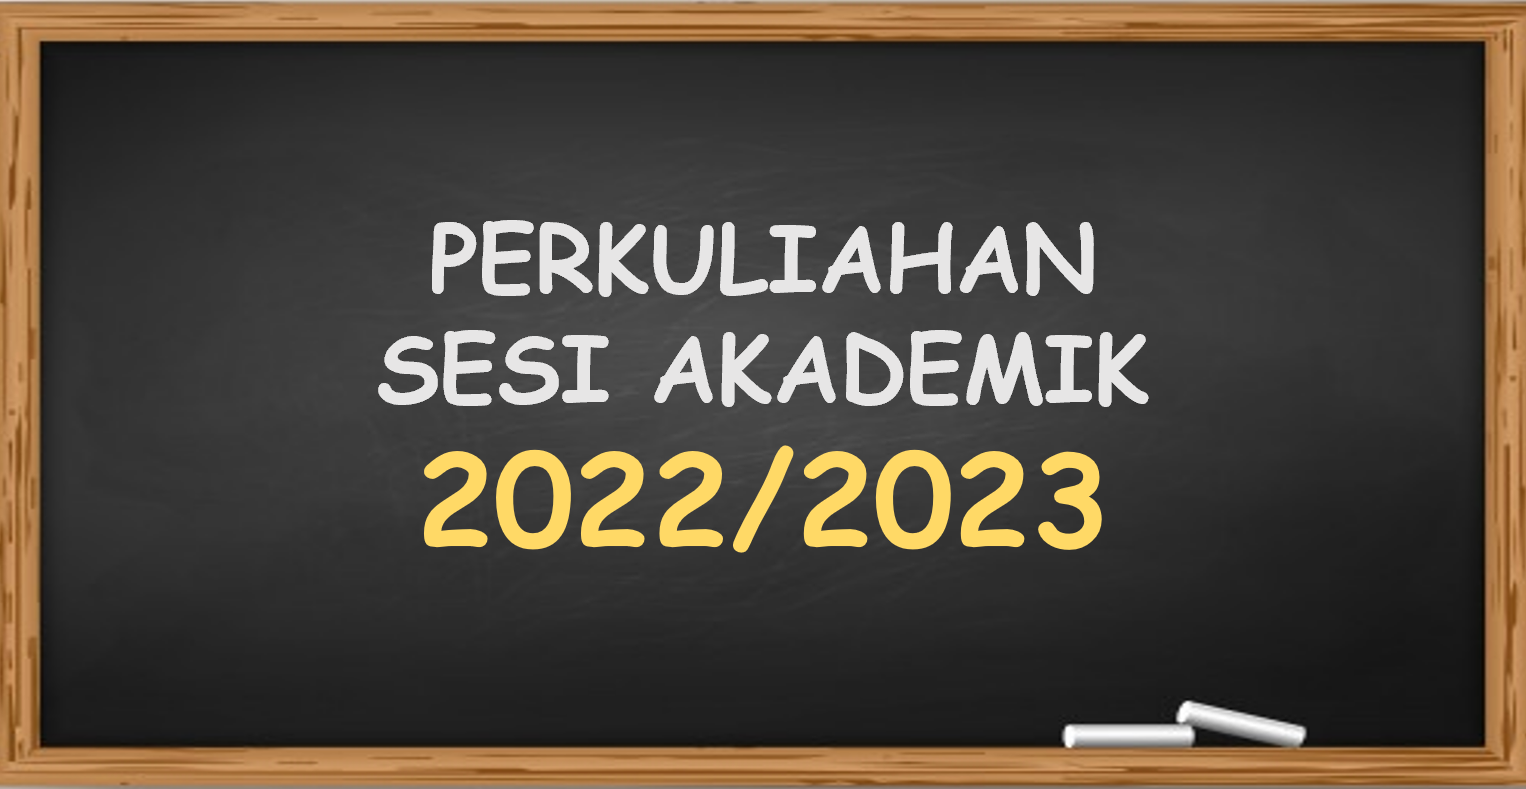 http://kupusb-pro.egc.gov.bn/SiteCollectionImages/makluman/PERKULIAHAN%2022-23.png